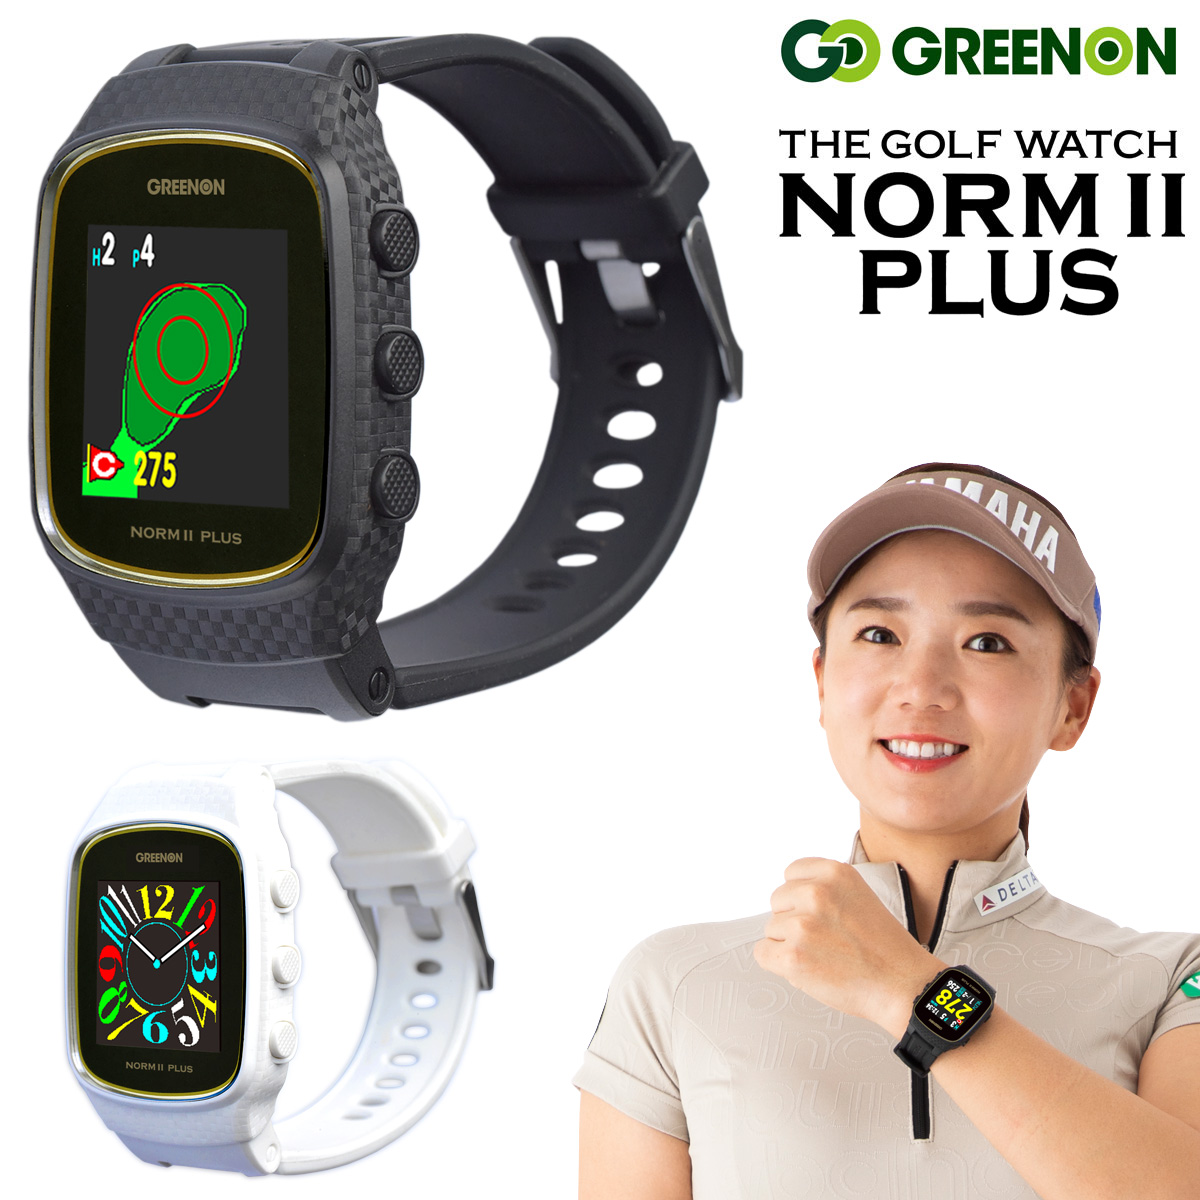 GreenOn グリーンオン日本正規品 THE GOLF WATCH NORM II PLUS (ザ・ゴルフウォッチノルム2プラス)  「みちびきL1S対応GPS距離測定器」 【公式】通販